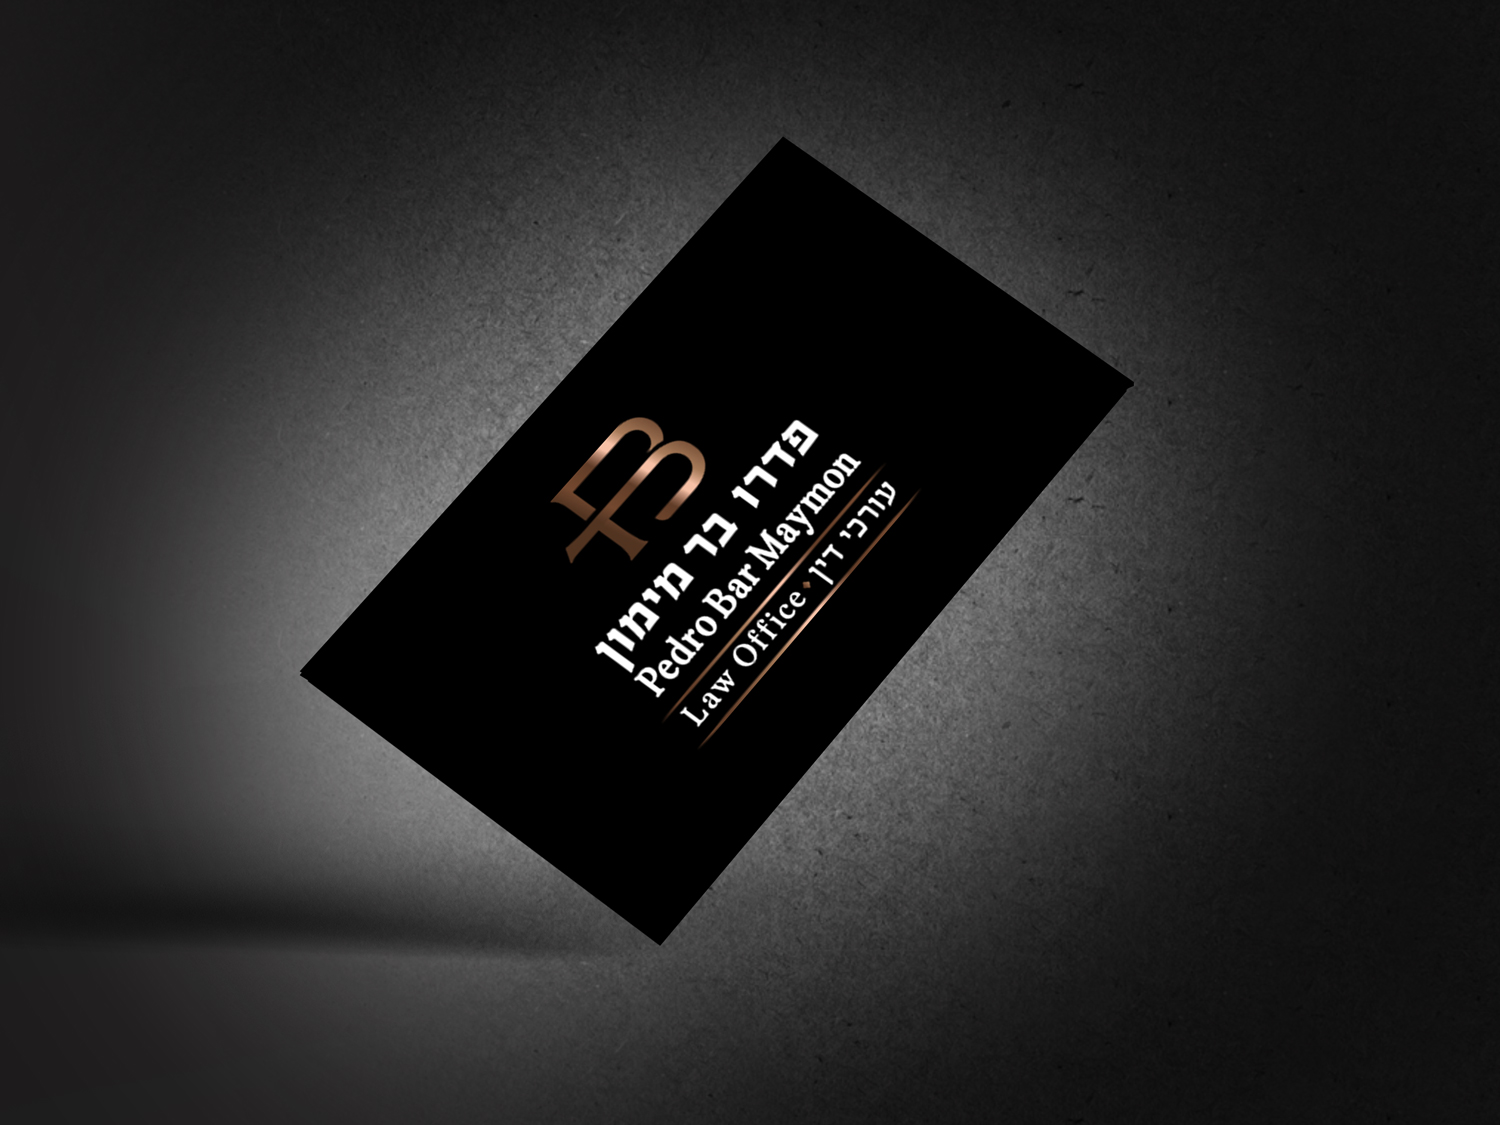 עיצוב לוגו לעורכות דין